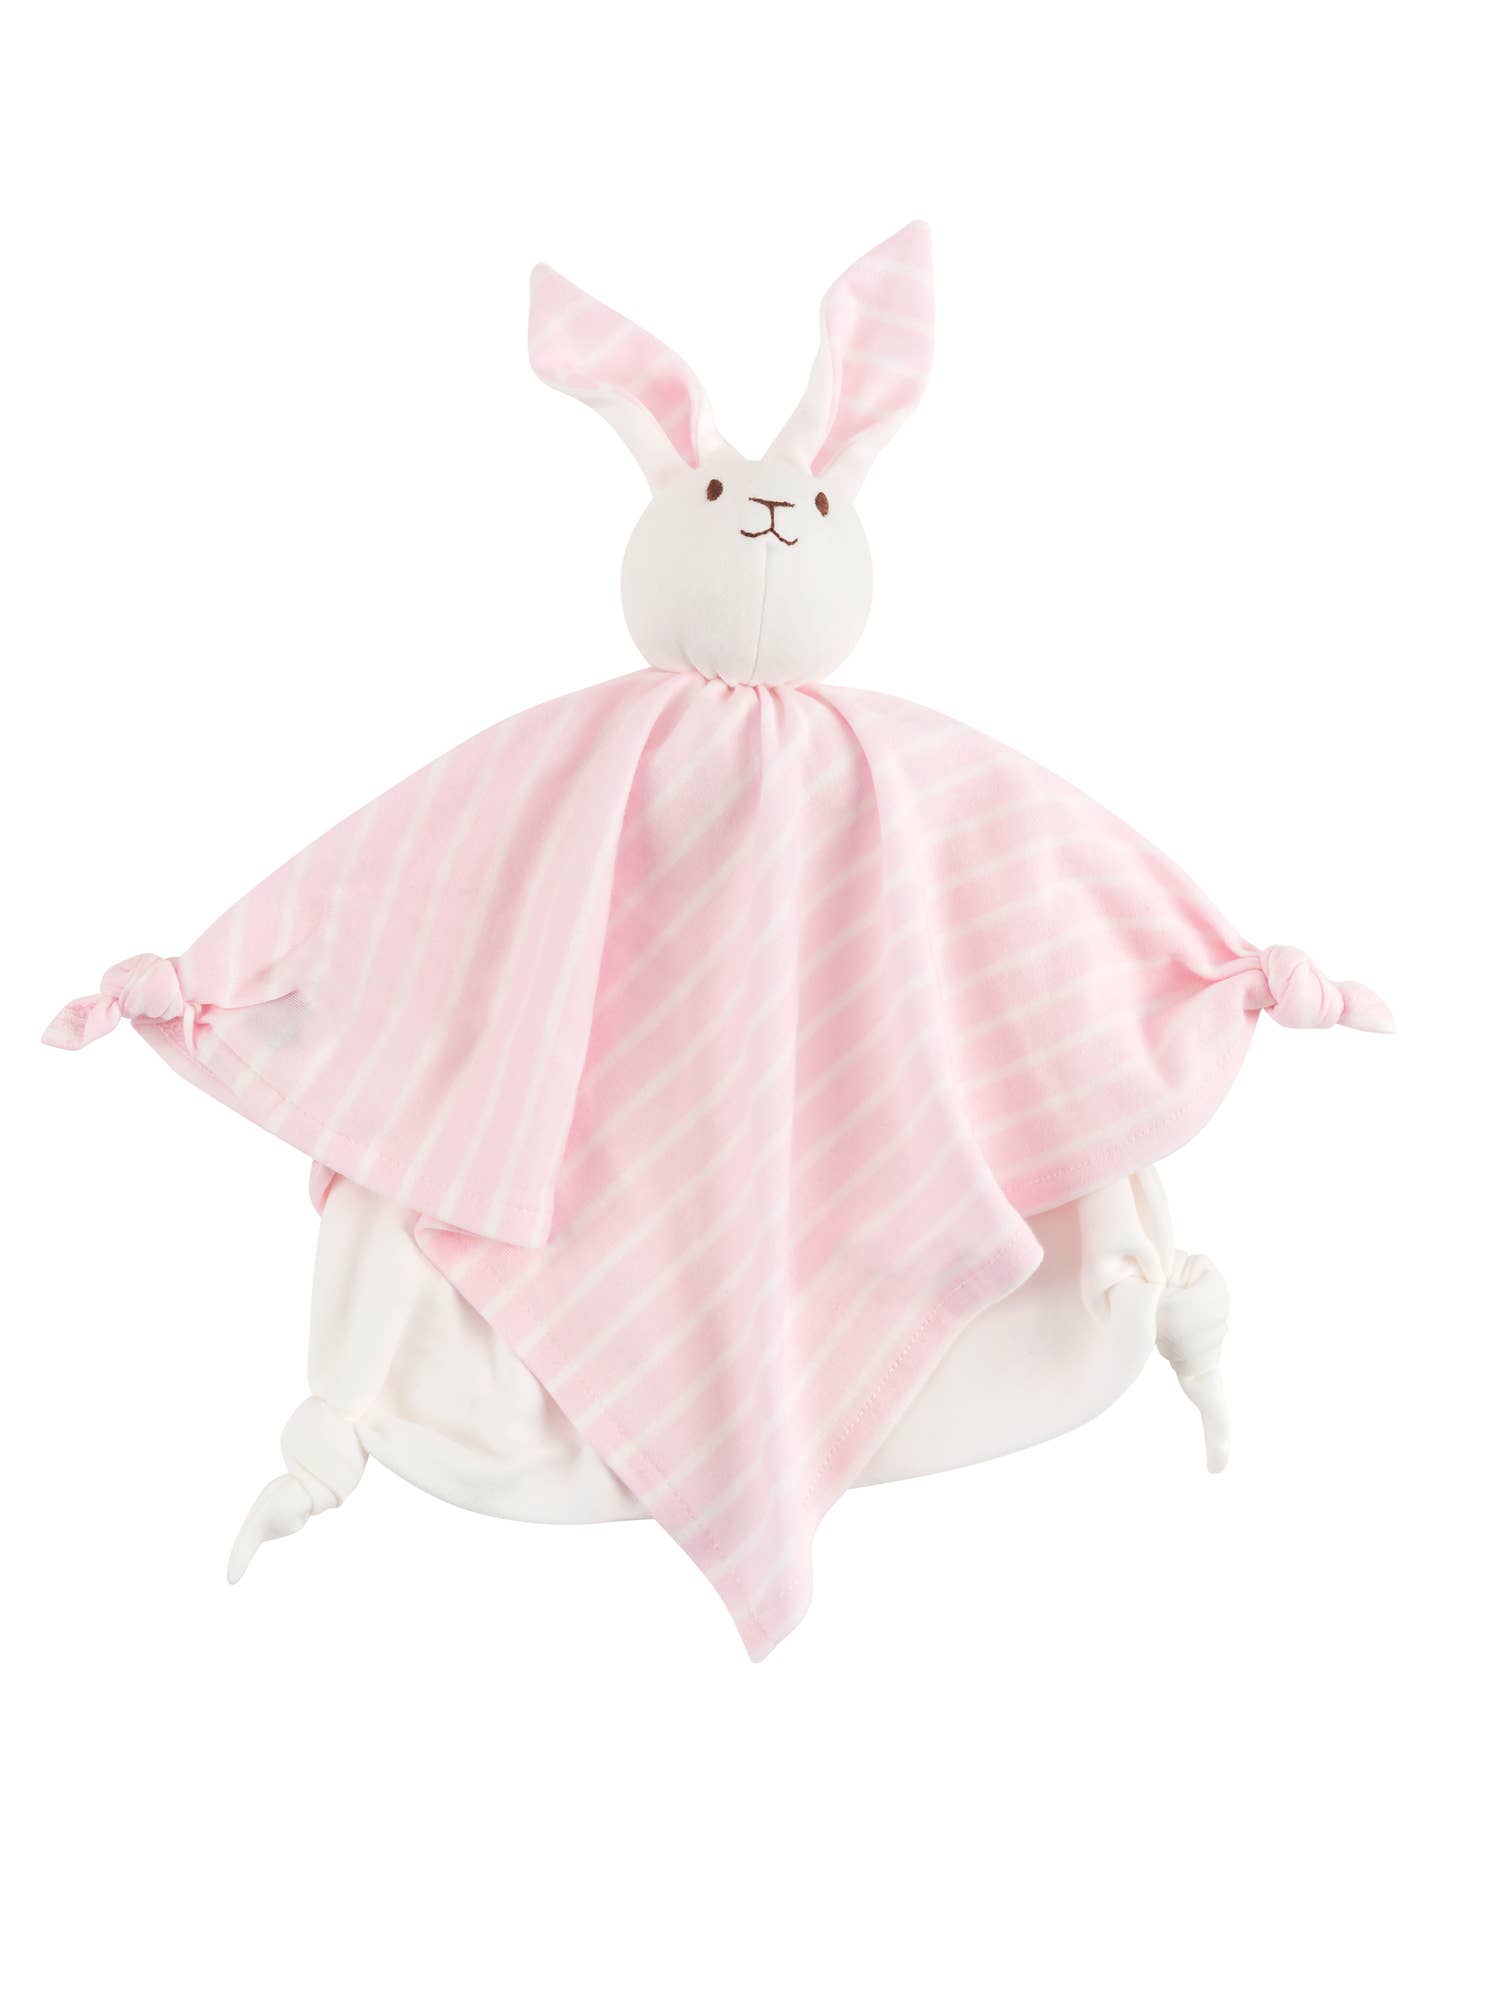 Organic Bunny Blanket Lovey Friend - Pink Stripe